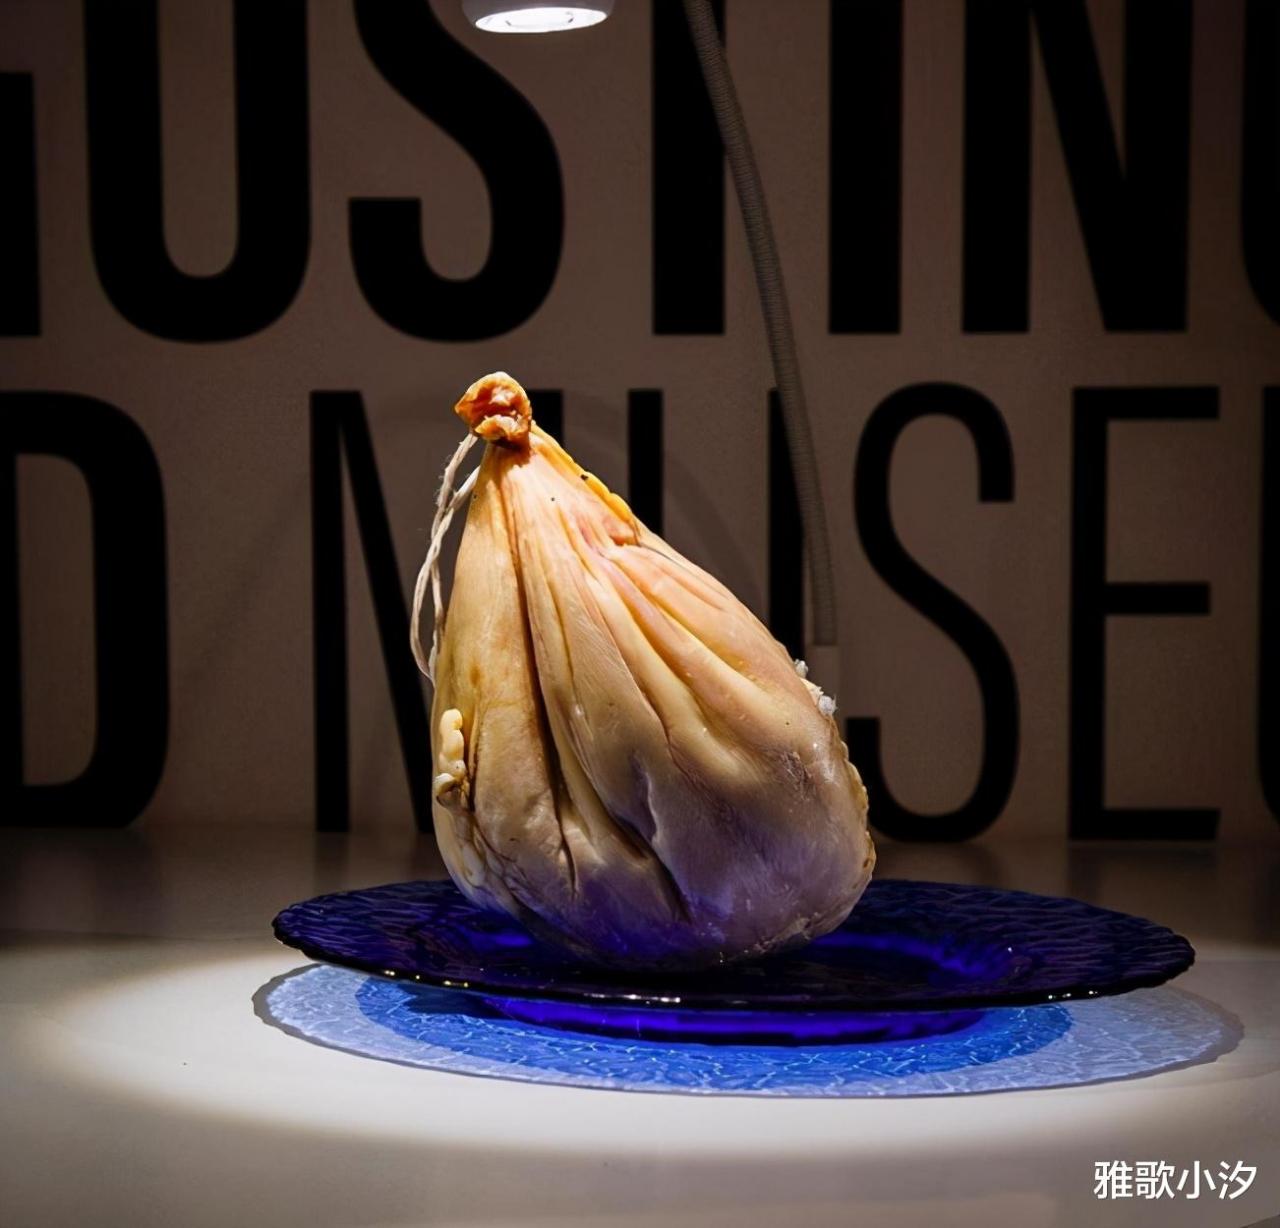 瑞典的“惡心食物博物館”展品有80種，中國的好幾款食物也被展出-圖1